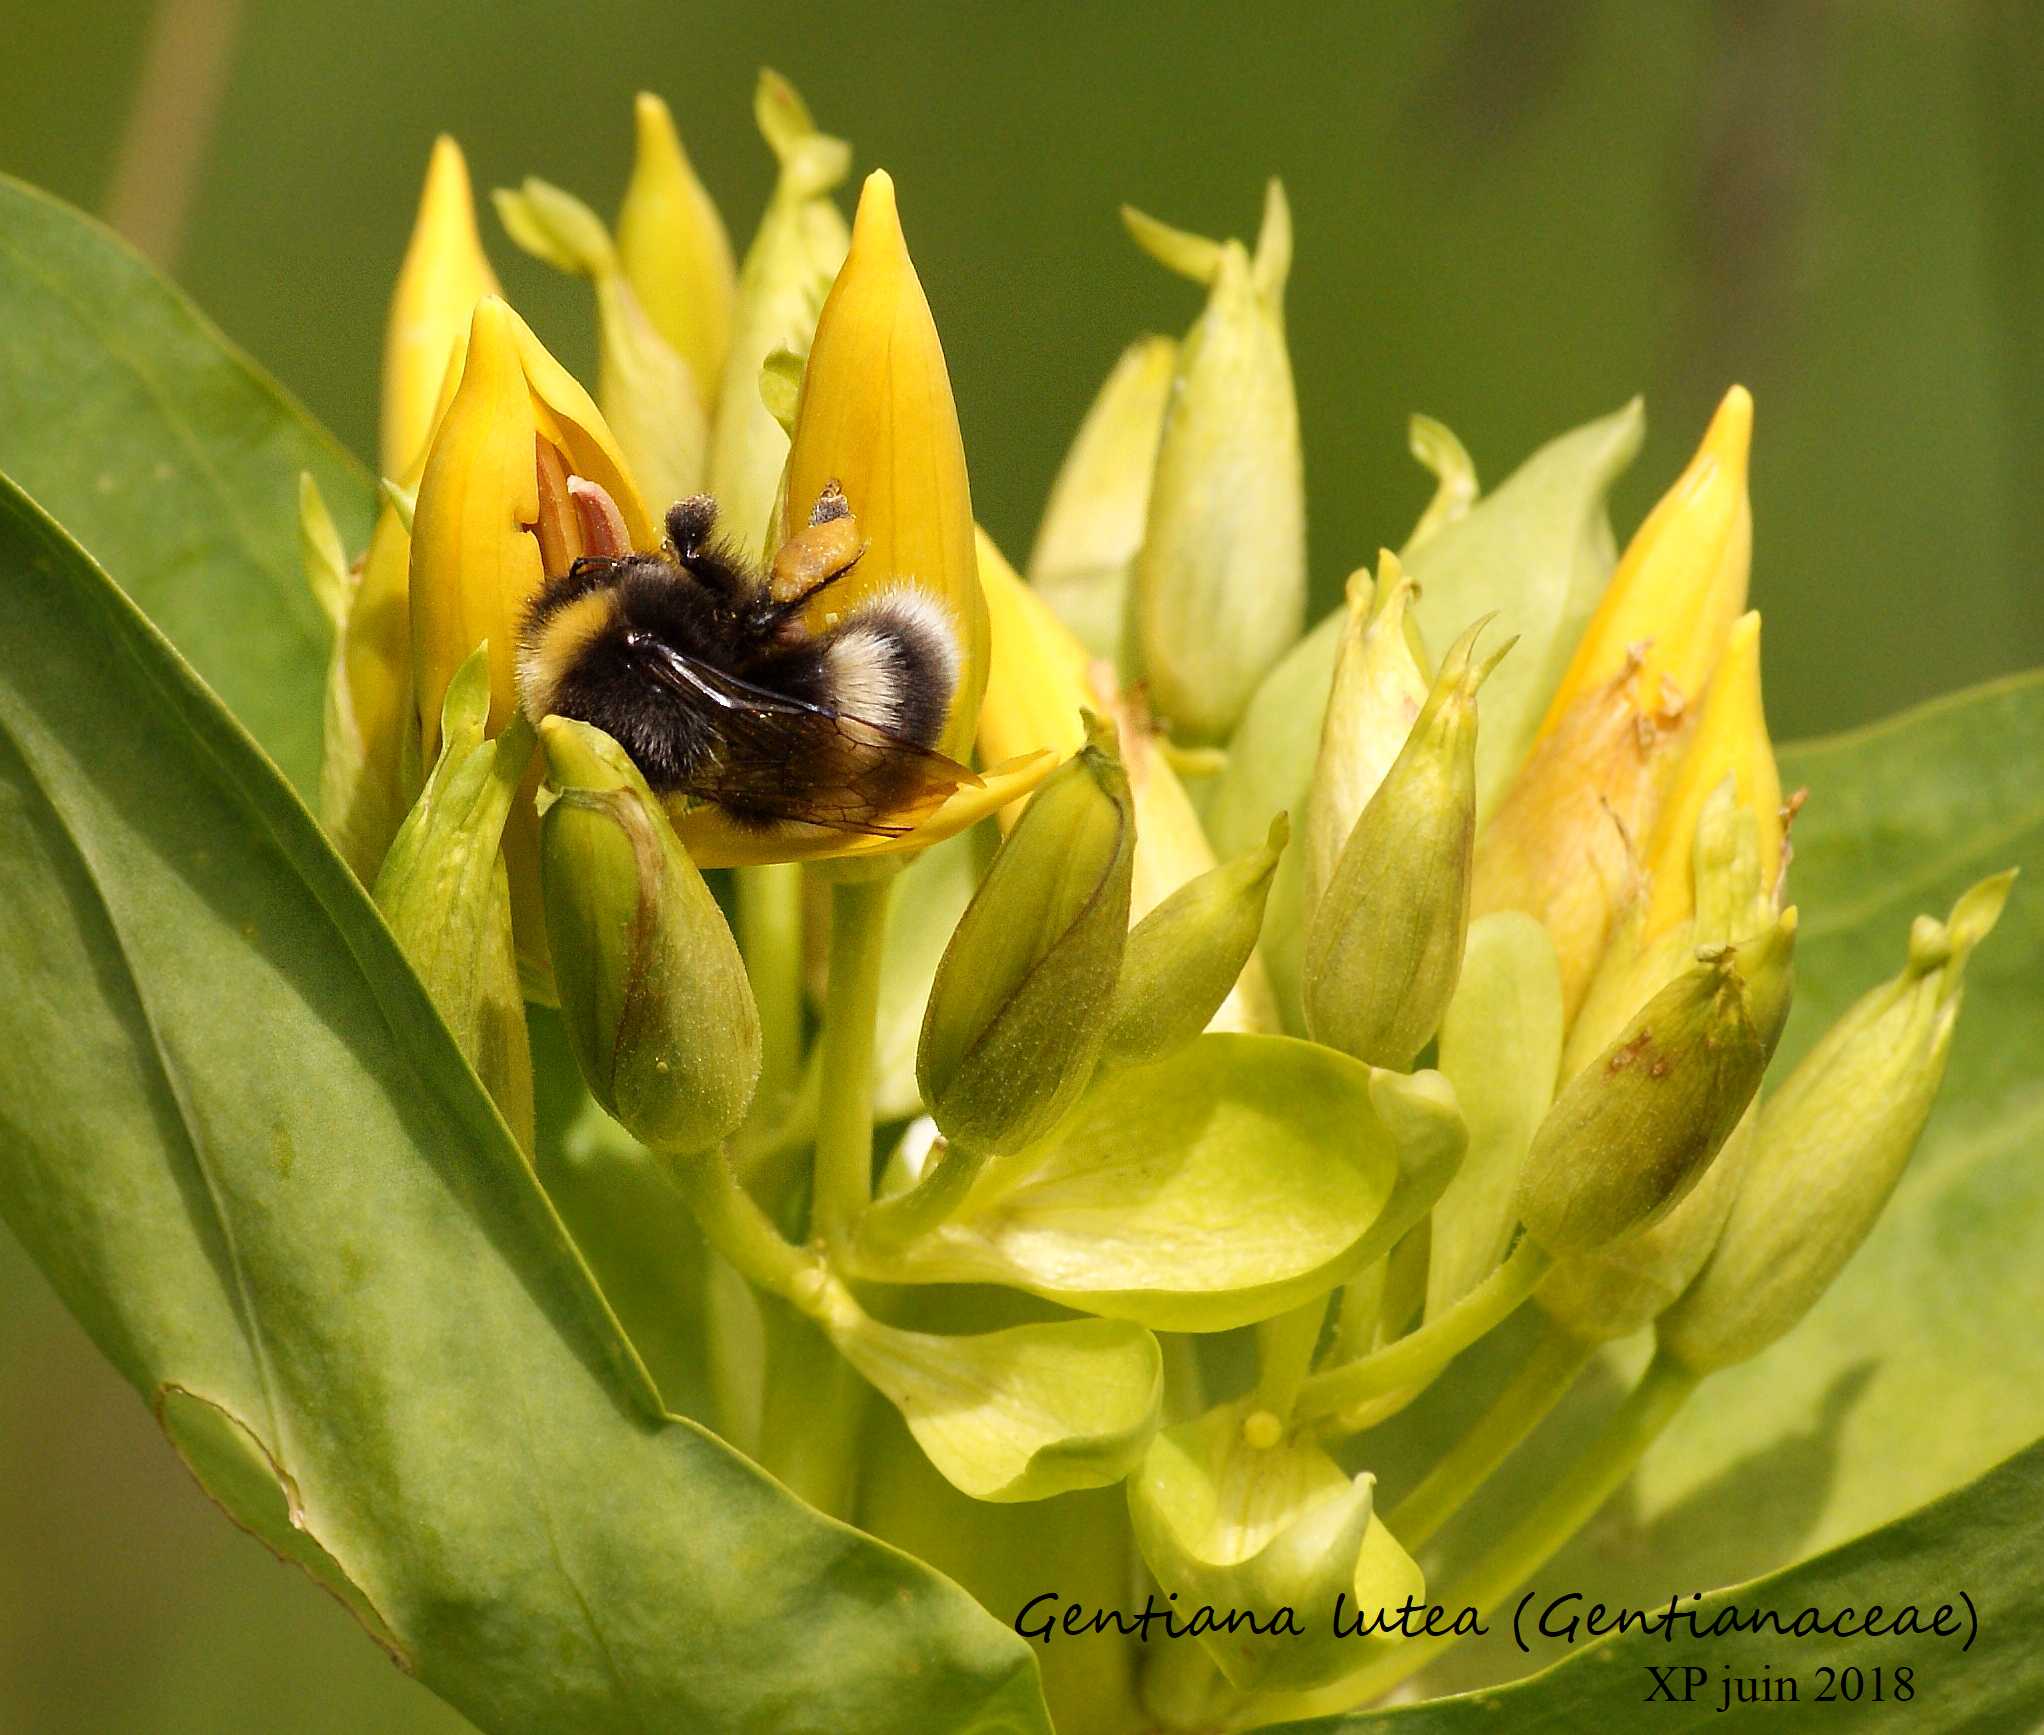 Les fleurs de la Gentiane jaune sont rassemblées en un pseudo-verticille. Le bourdon récolte tranquillement pollen et nectar d'une fleur à l'autre. Crêtes vosgiennes entre le Kastelberg et le Hohneck, le 24 juin 2018